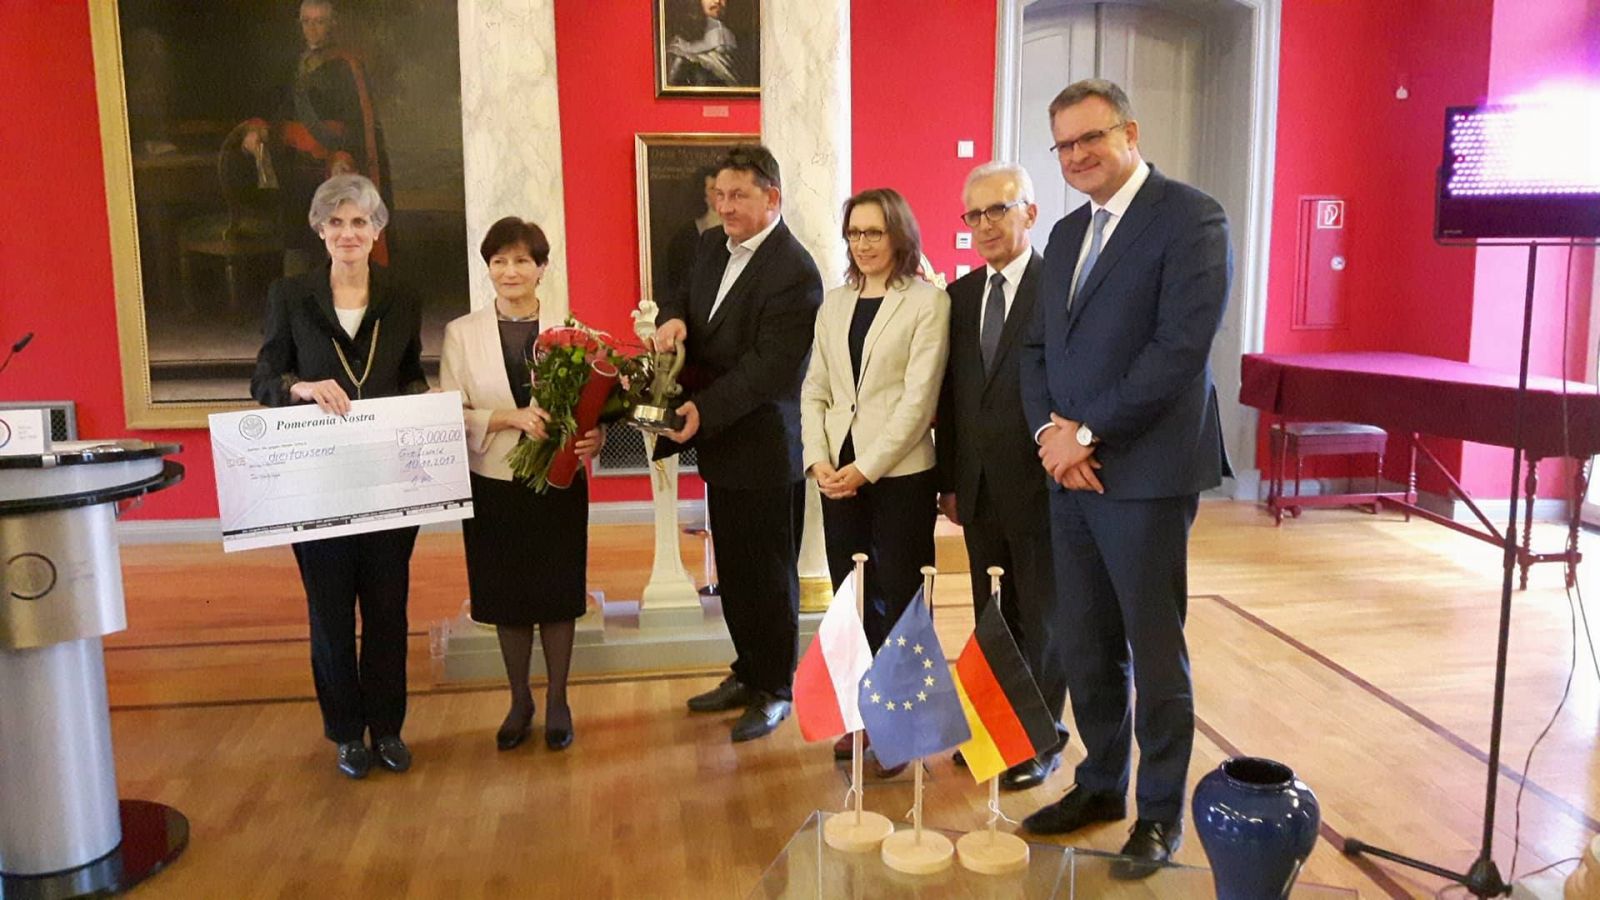 Uroczystość wręczenia Nagrody Pomerania Nostra prof. Annie Wolff-Powęskiej